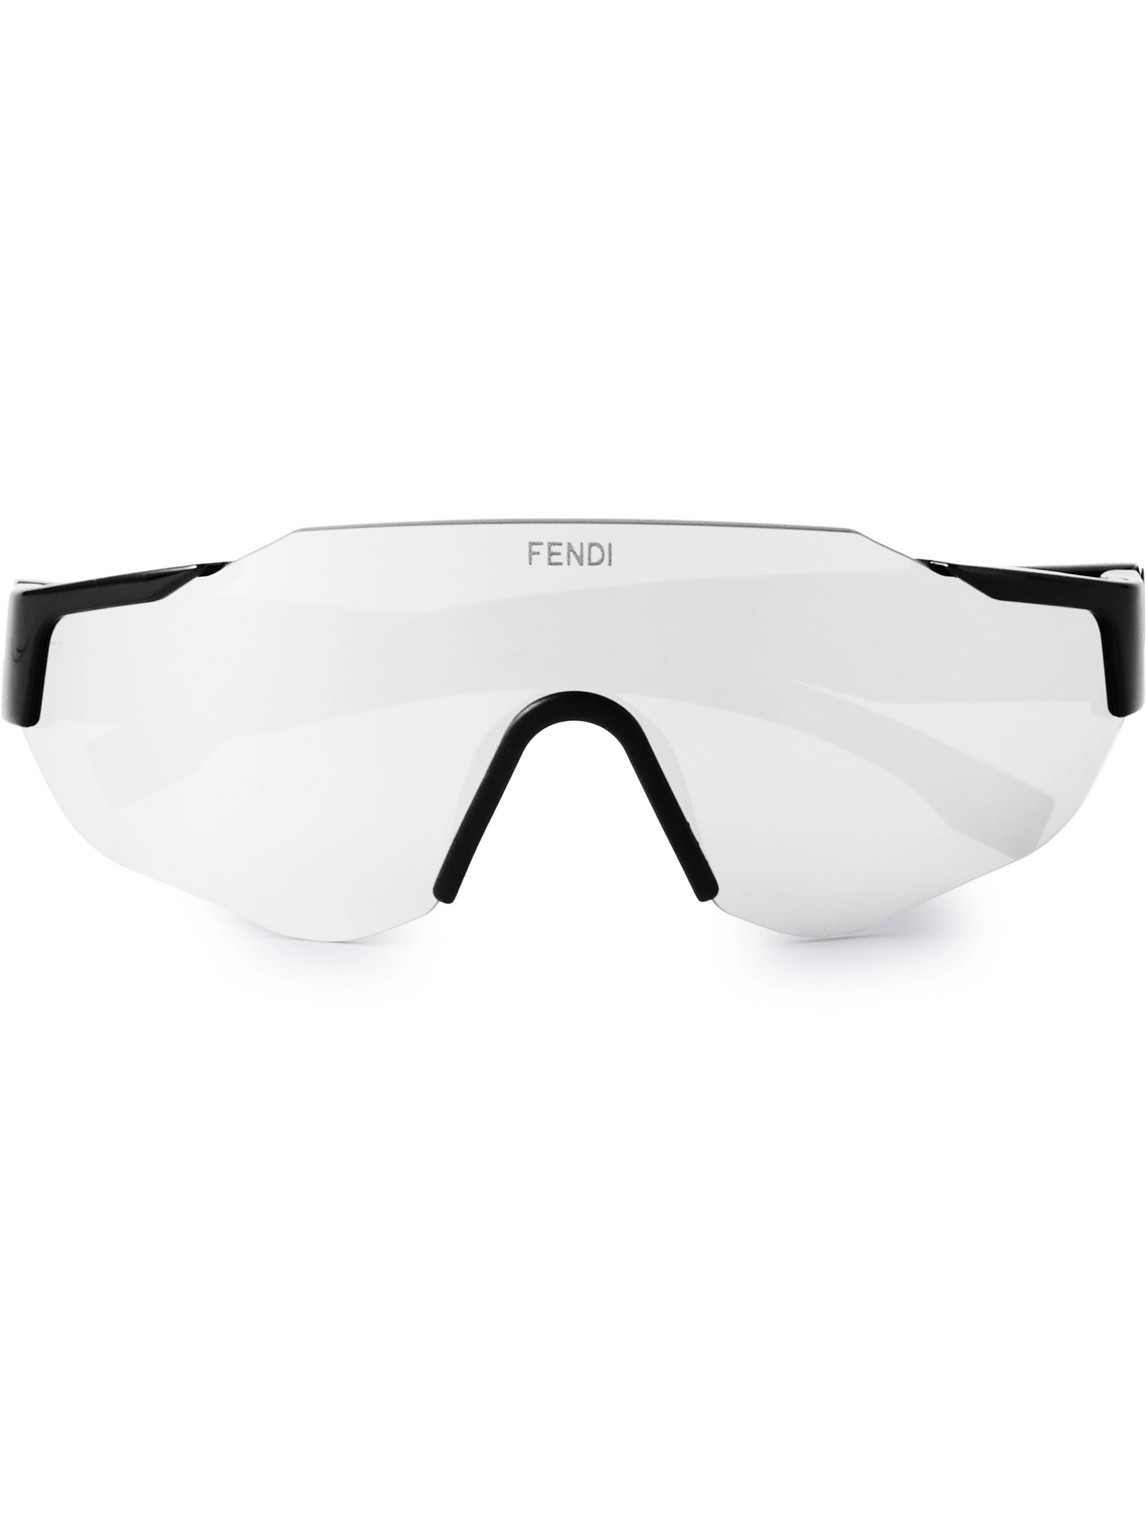 Fendi Frameless Acetate Sunglasses In Black